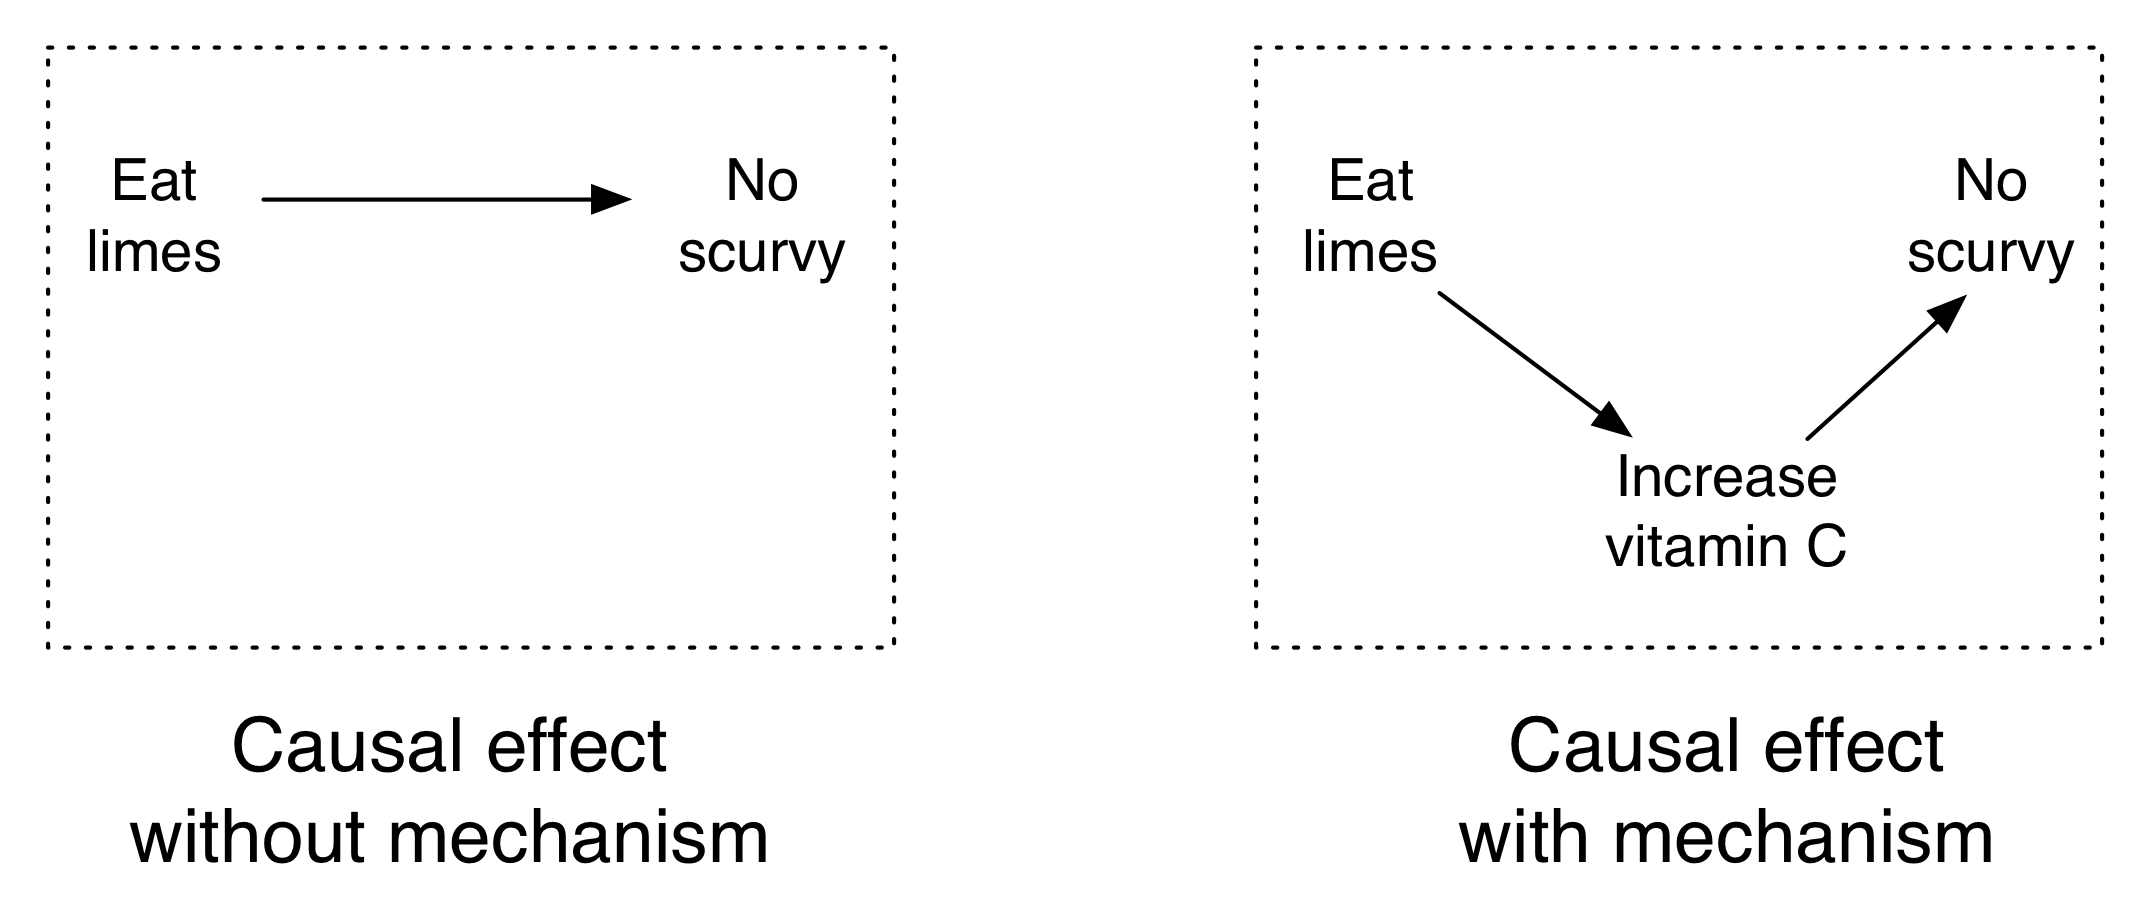 Figura 4.10: Limes impedem escorbuto e o mecanismo é vitamina C.